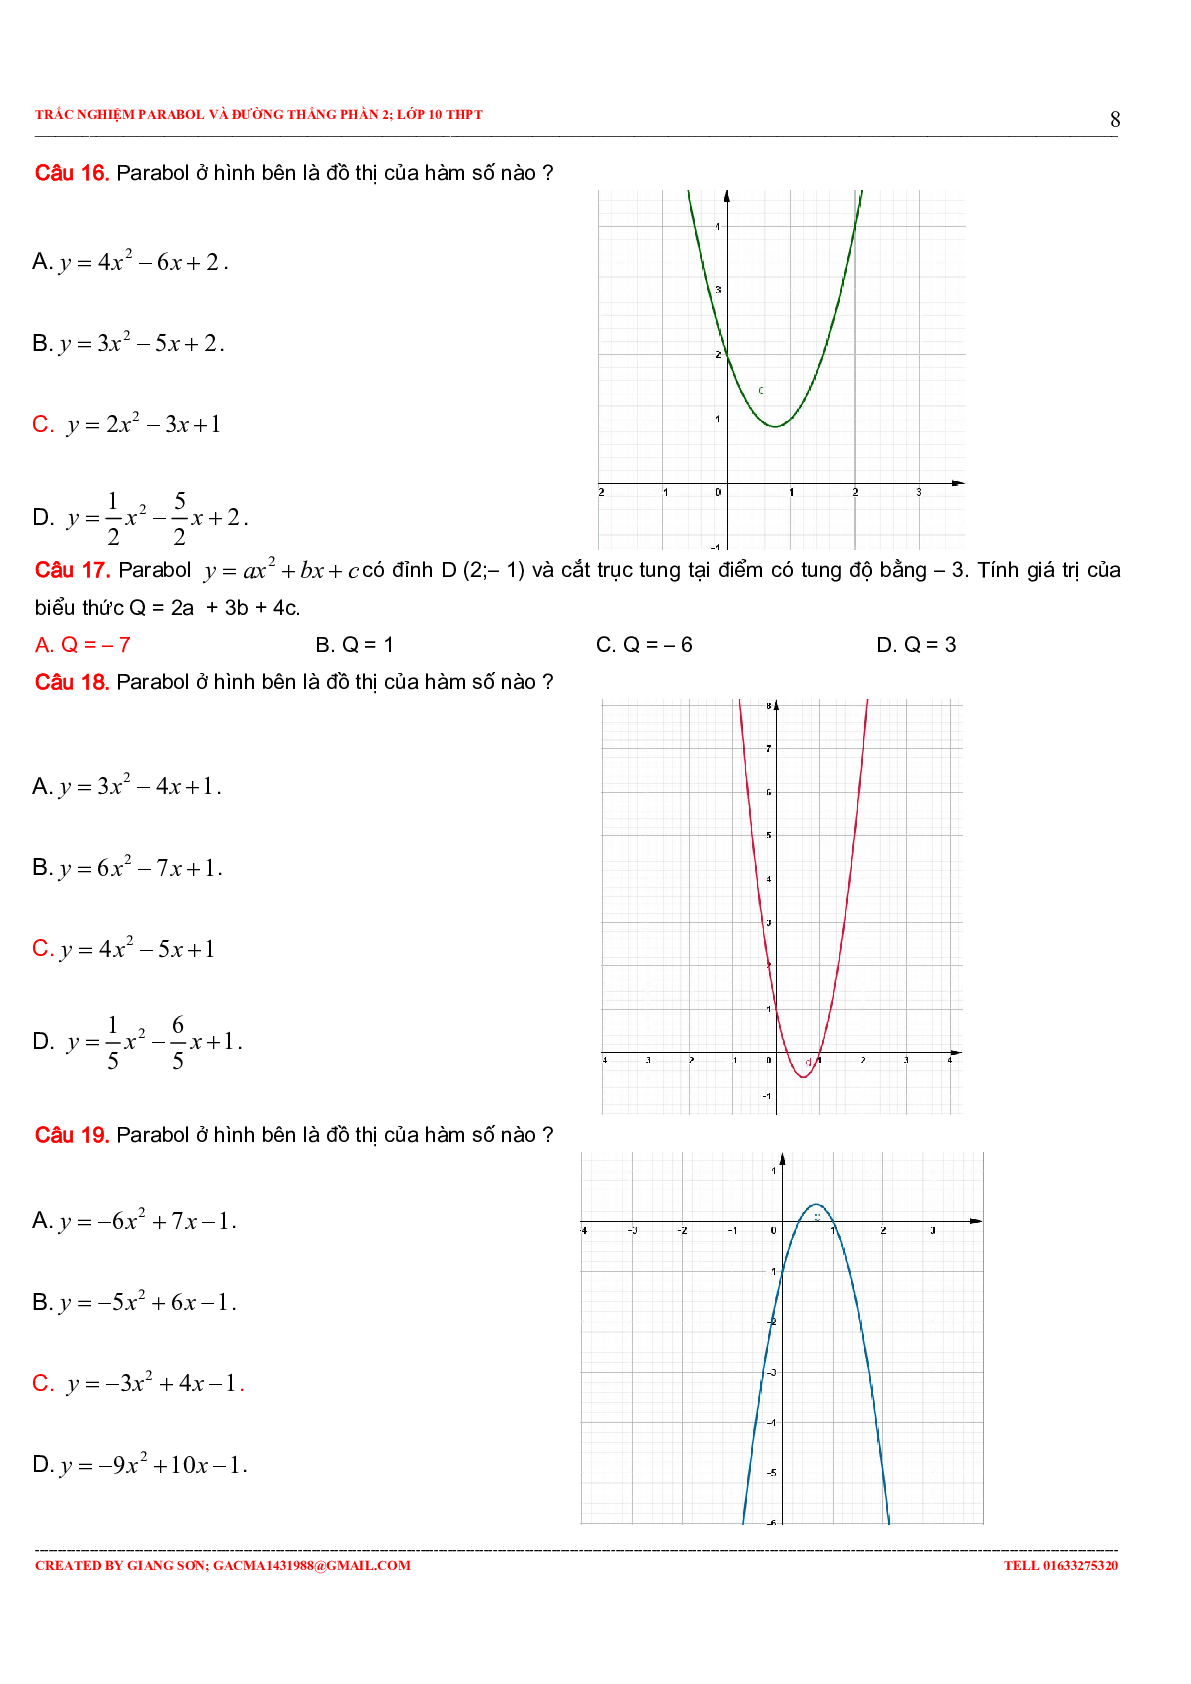 97 Bài tập trắc nghiệm Parabol và đường thẳng phần 2 (trang 8)